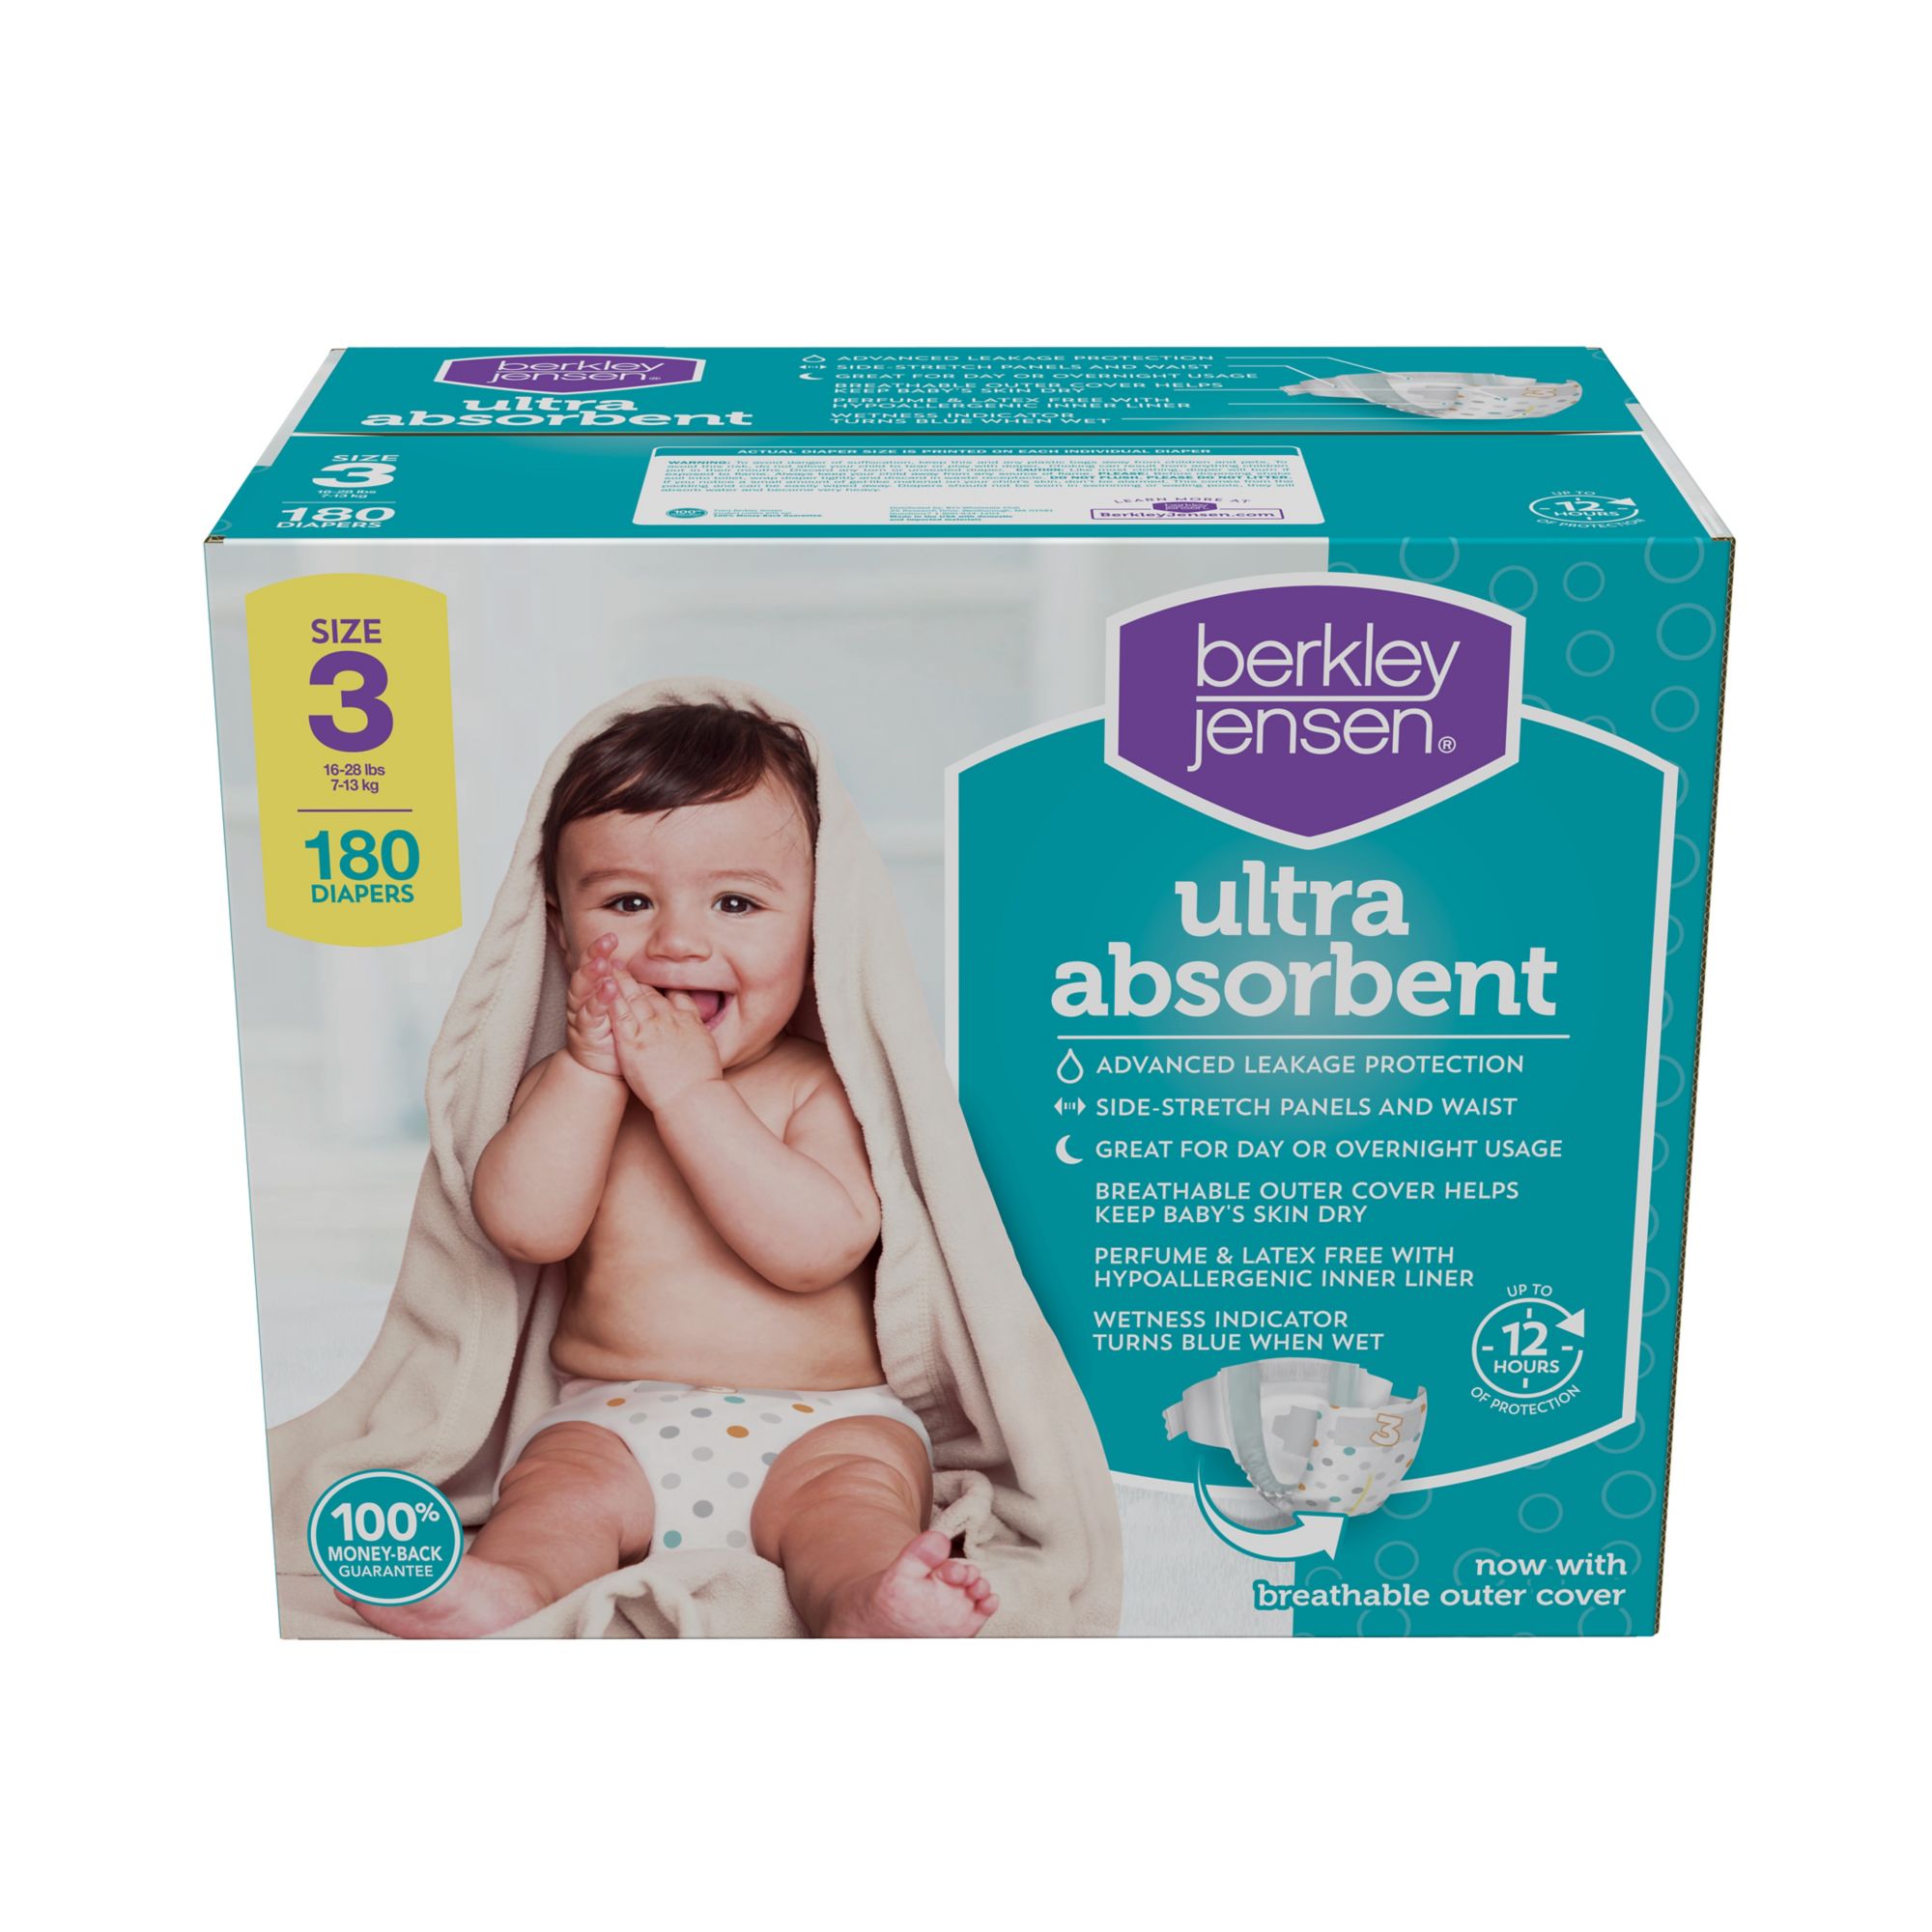 Berkley Jensen Ultra Absorbent Diapers 